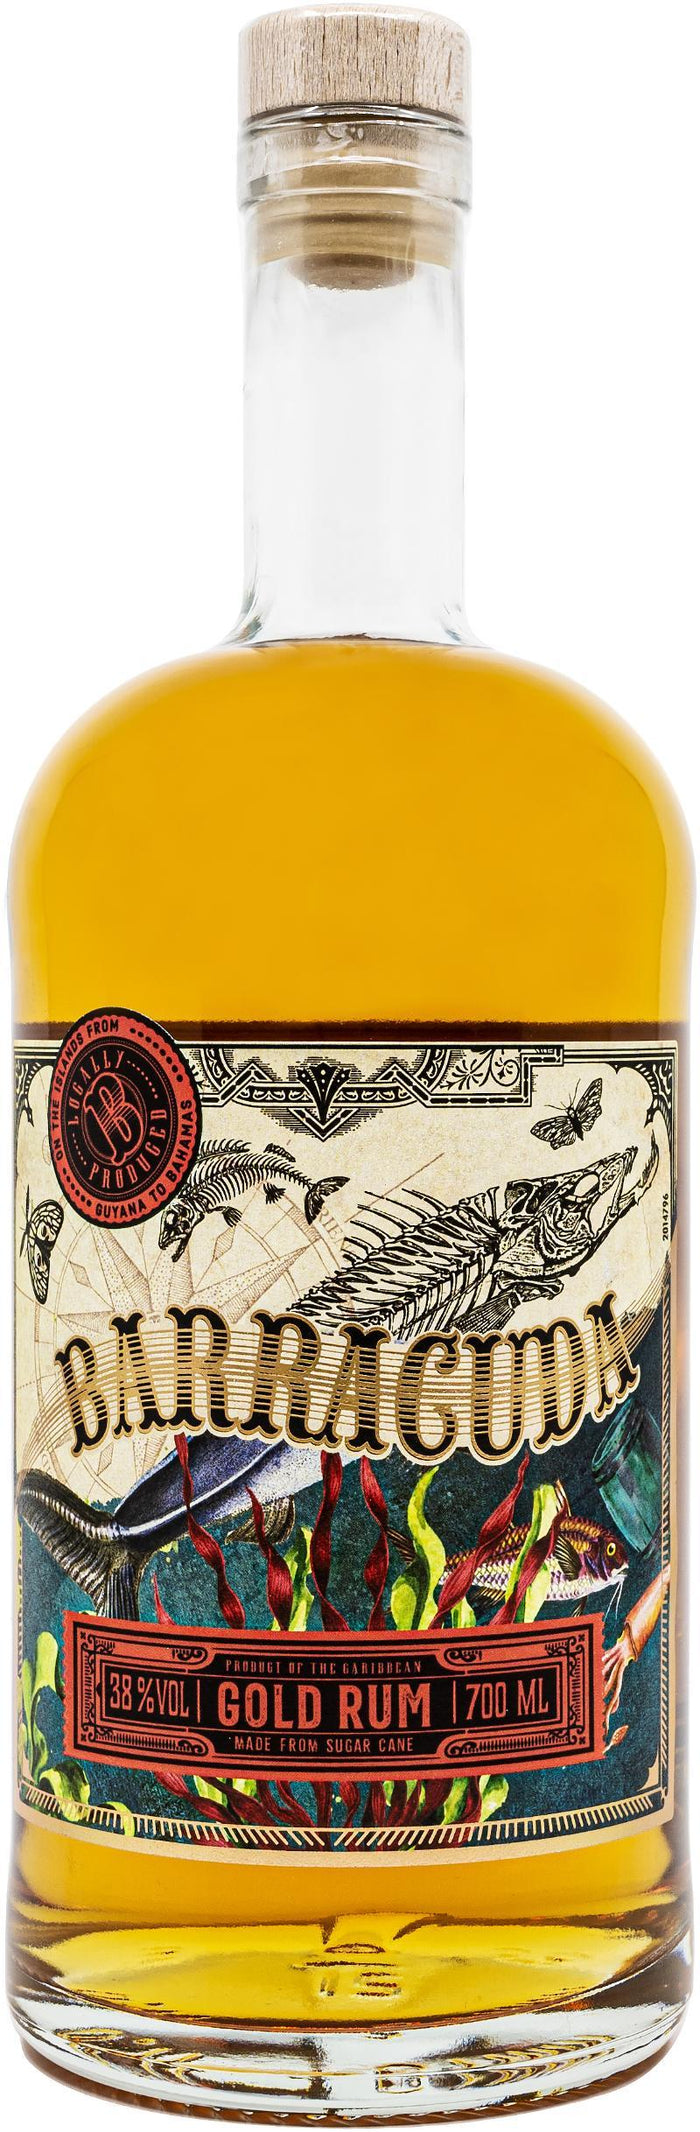 Barracuda Gold Jamaica Rum | 700ML